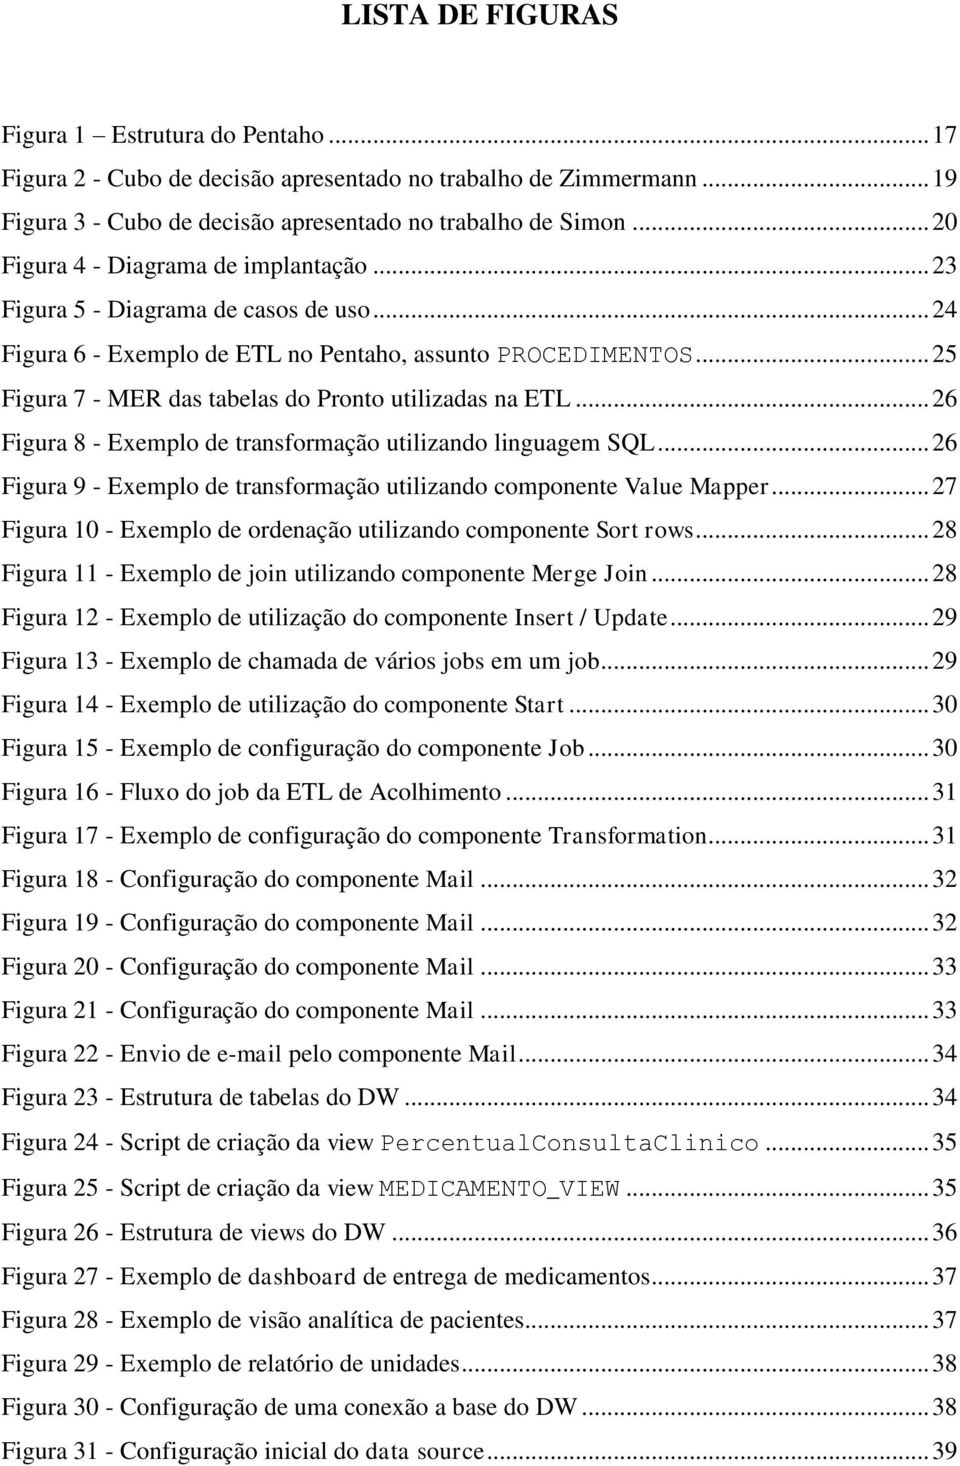 .. 25 Figura 7 - MER das tabelas do Pronto utilizadas na ETL... 26 Figura 8 - Exemplo de transformação utilizando linguagem SQL.